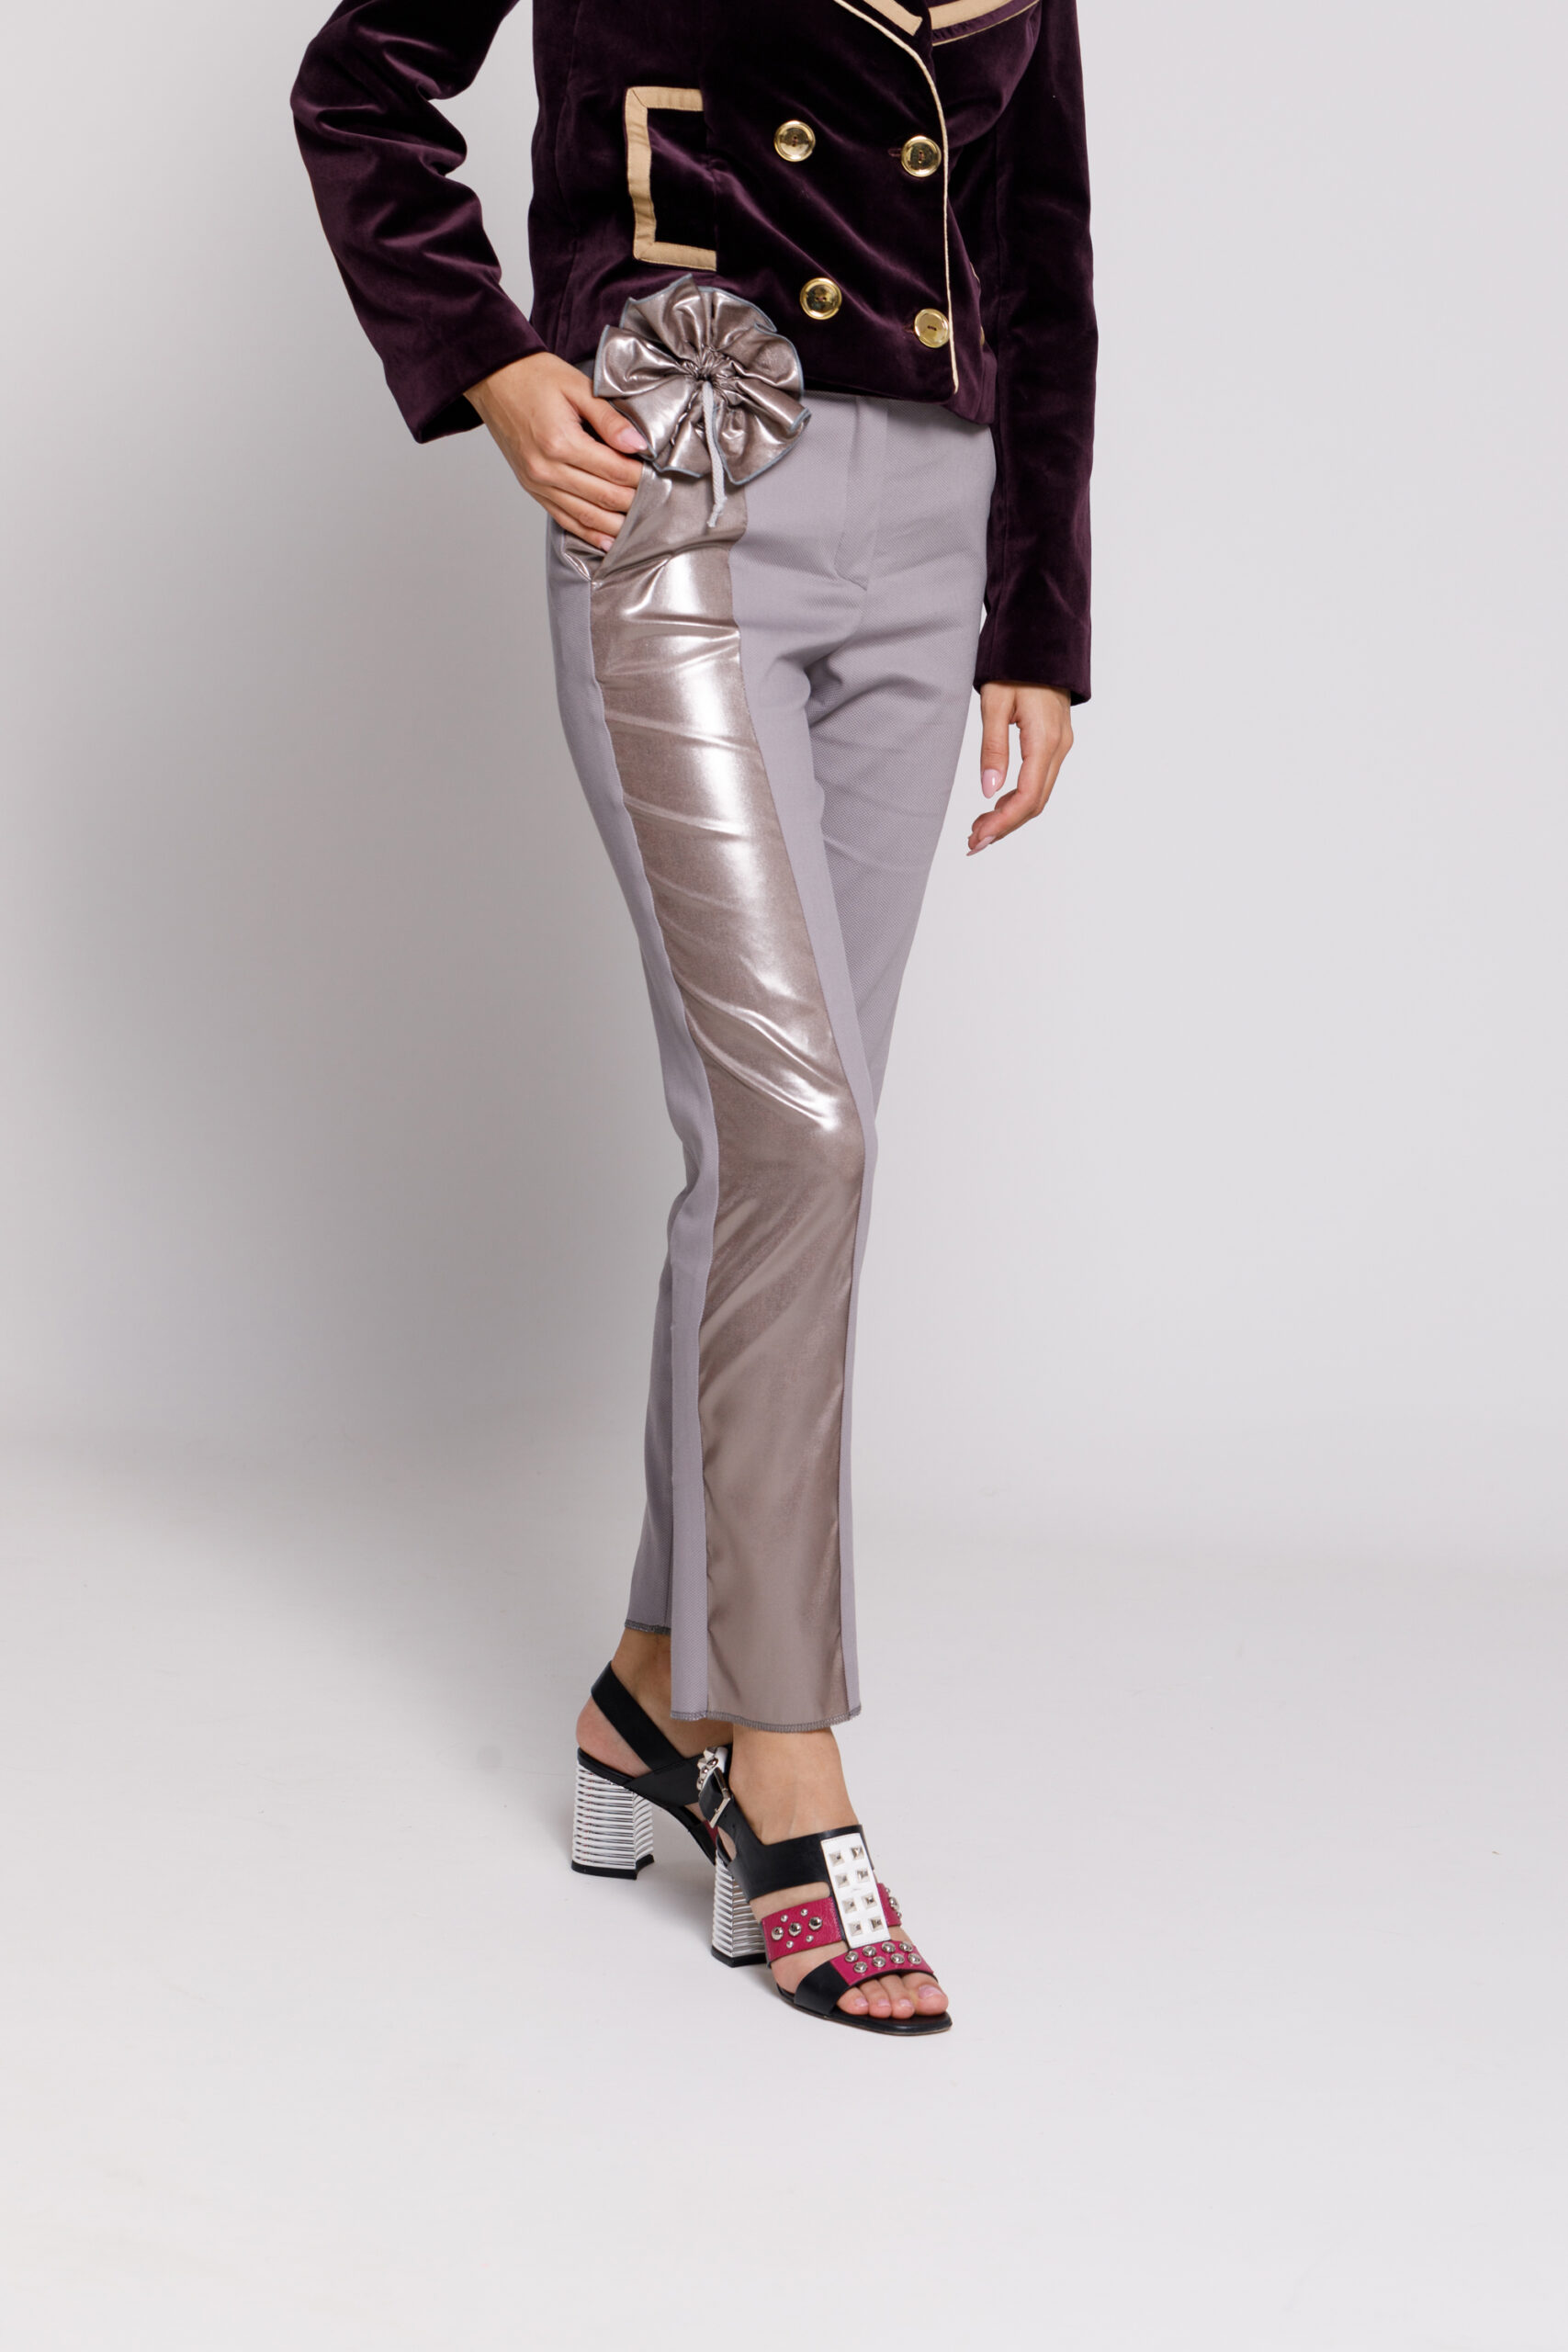 Pantalon FRANCO elegant gri cu trandafir metalizat. Materiale naturale, design unicat, cu broderie si aplicatii handmade